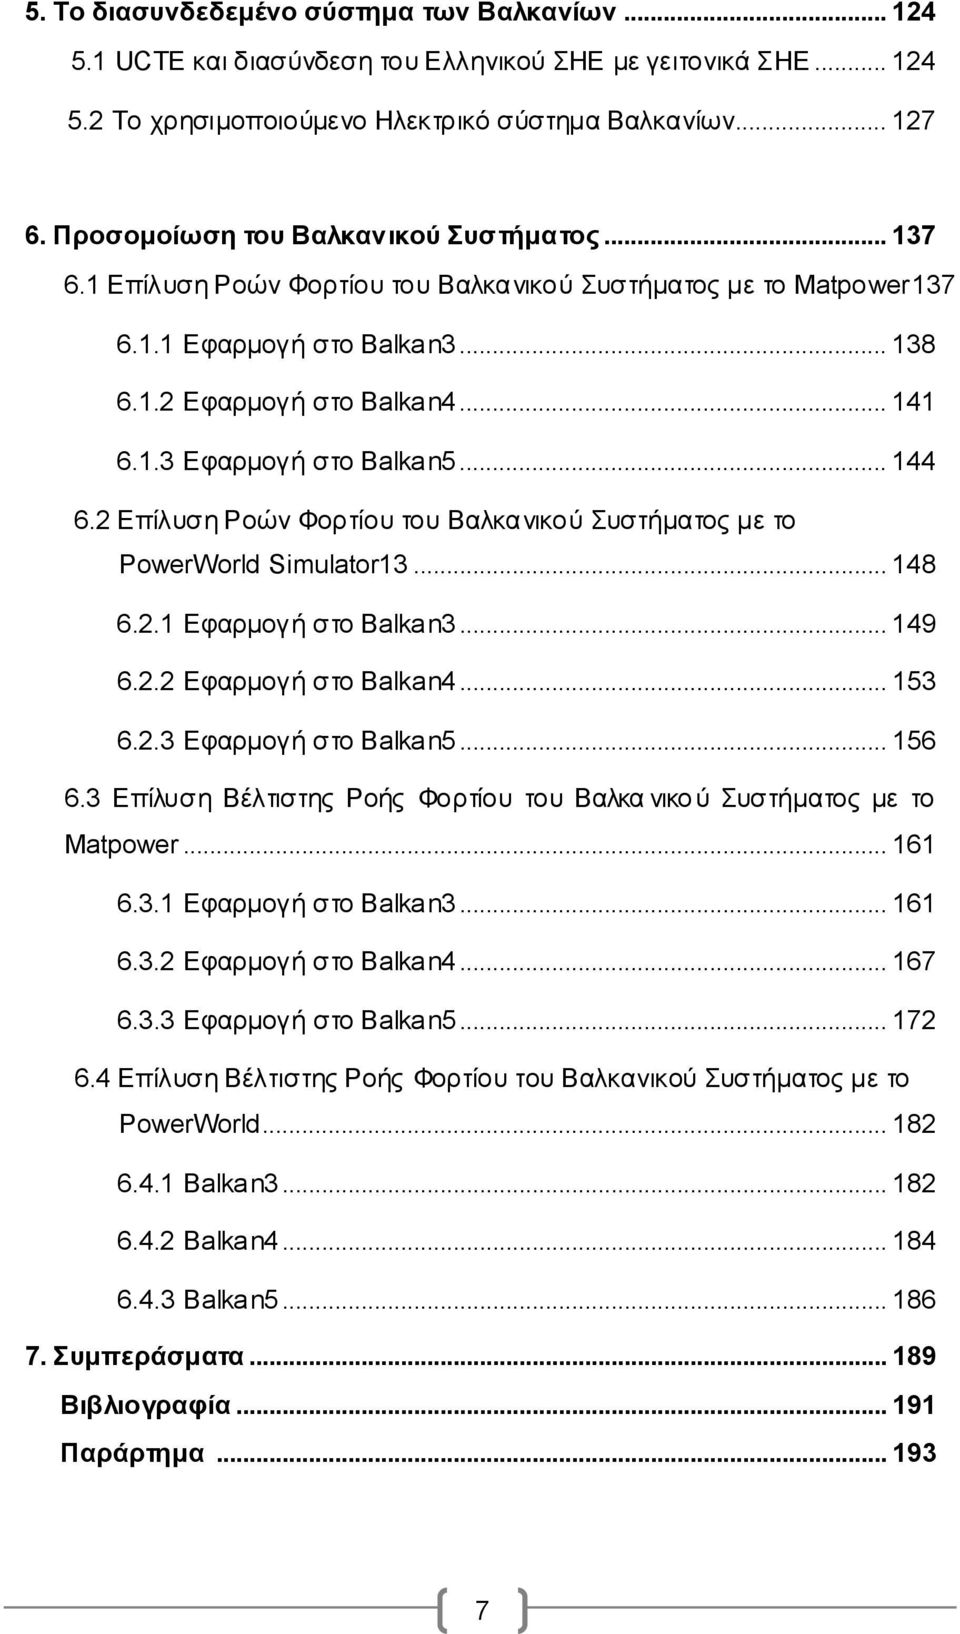 .. 144 6.2 Επίλυση Ροών Φορτίου του Βαλκανικού Συστήματος με το PowerWorld Simulator13... 148 6.2.1 Εφαρμογή στο Balkan3... 149 6.2.2 Εφαρμογή στο Balkan4... 153 6.2.3 Εφαρμογή στο Balkan5... 156 6.